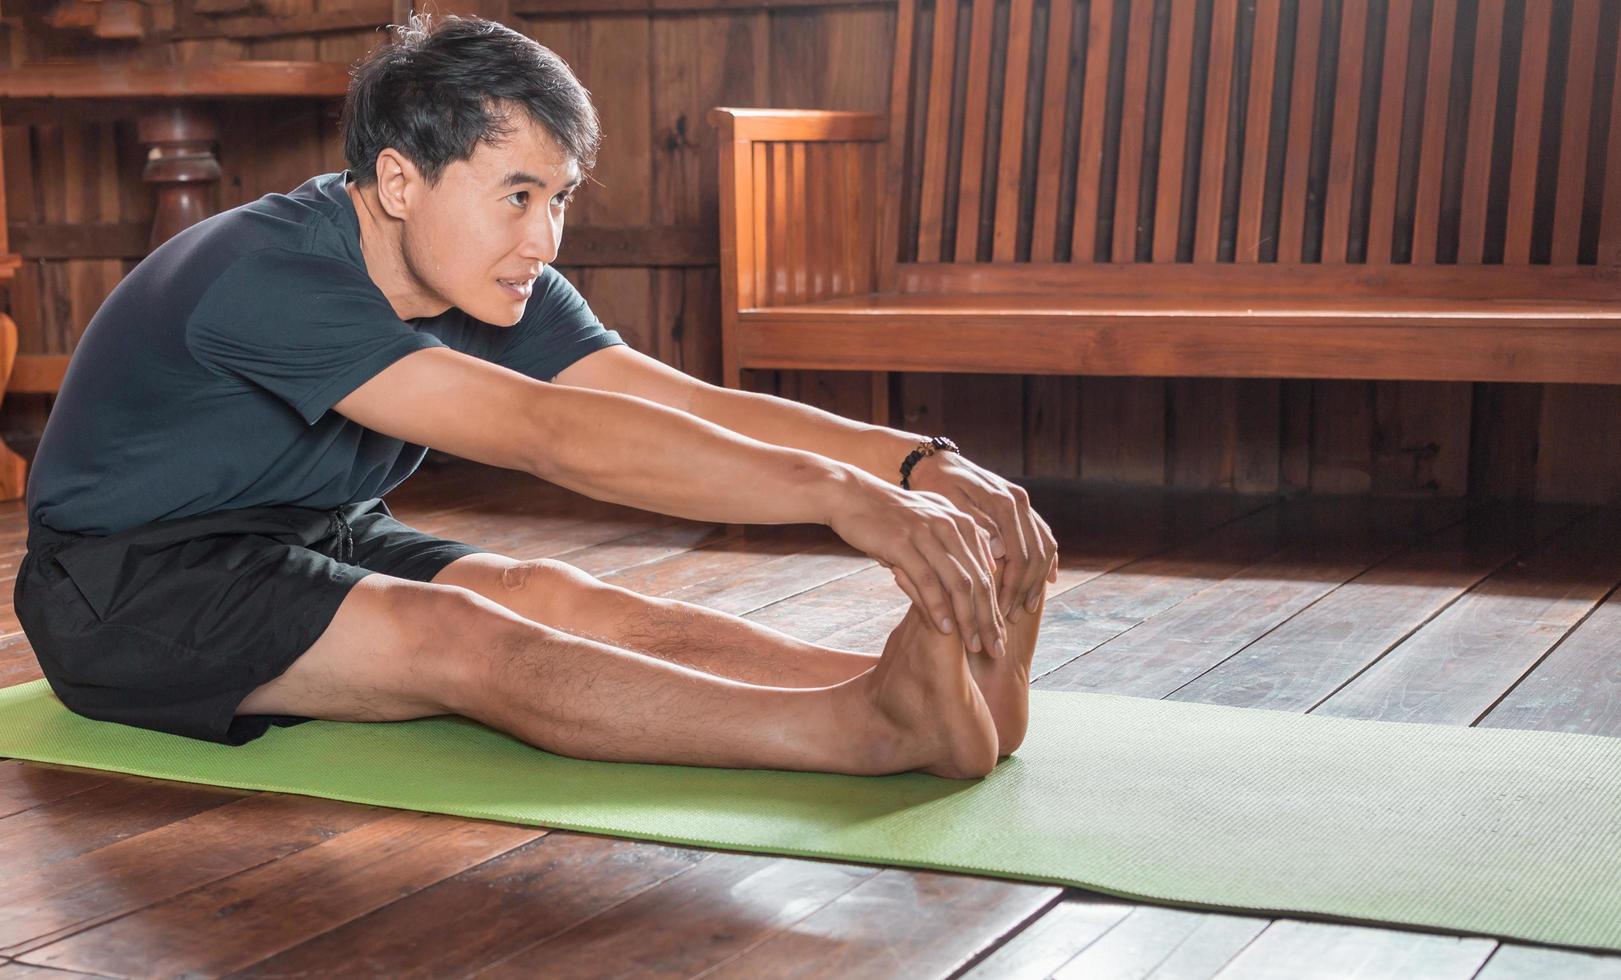 el hombre asiático deportivo de negro está haciendo yoga mientras hace ejercicio en una colchoneta de yoga en casa con piso de madera. práctica de yoga hombre pose entrenamiento concepto de vida saludable foto